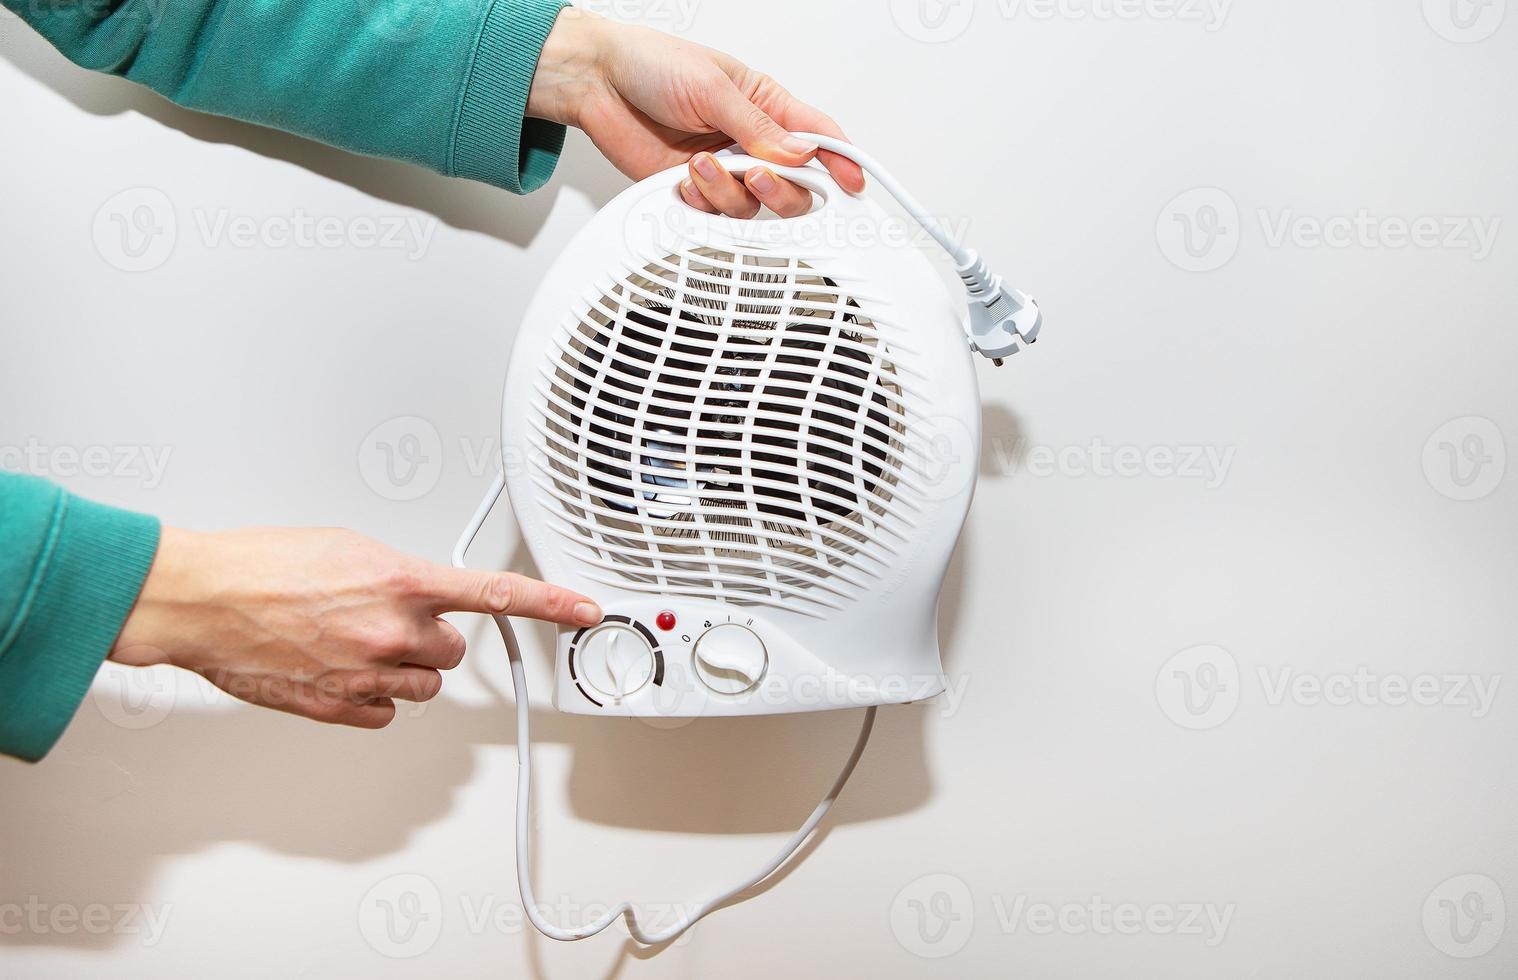 Heizung isoliert auf weißem Hintergrund. Ein Mädchen hält einen Heizlüfter aus Kunststoff und zeigt den Temperaturregler. foto